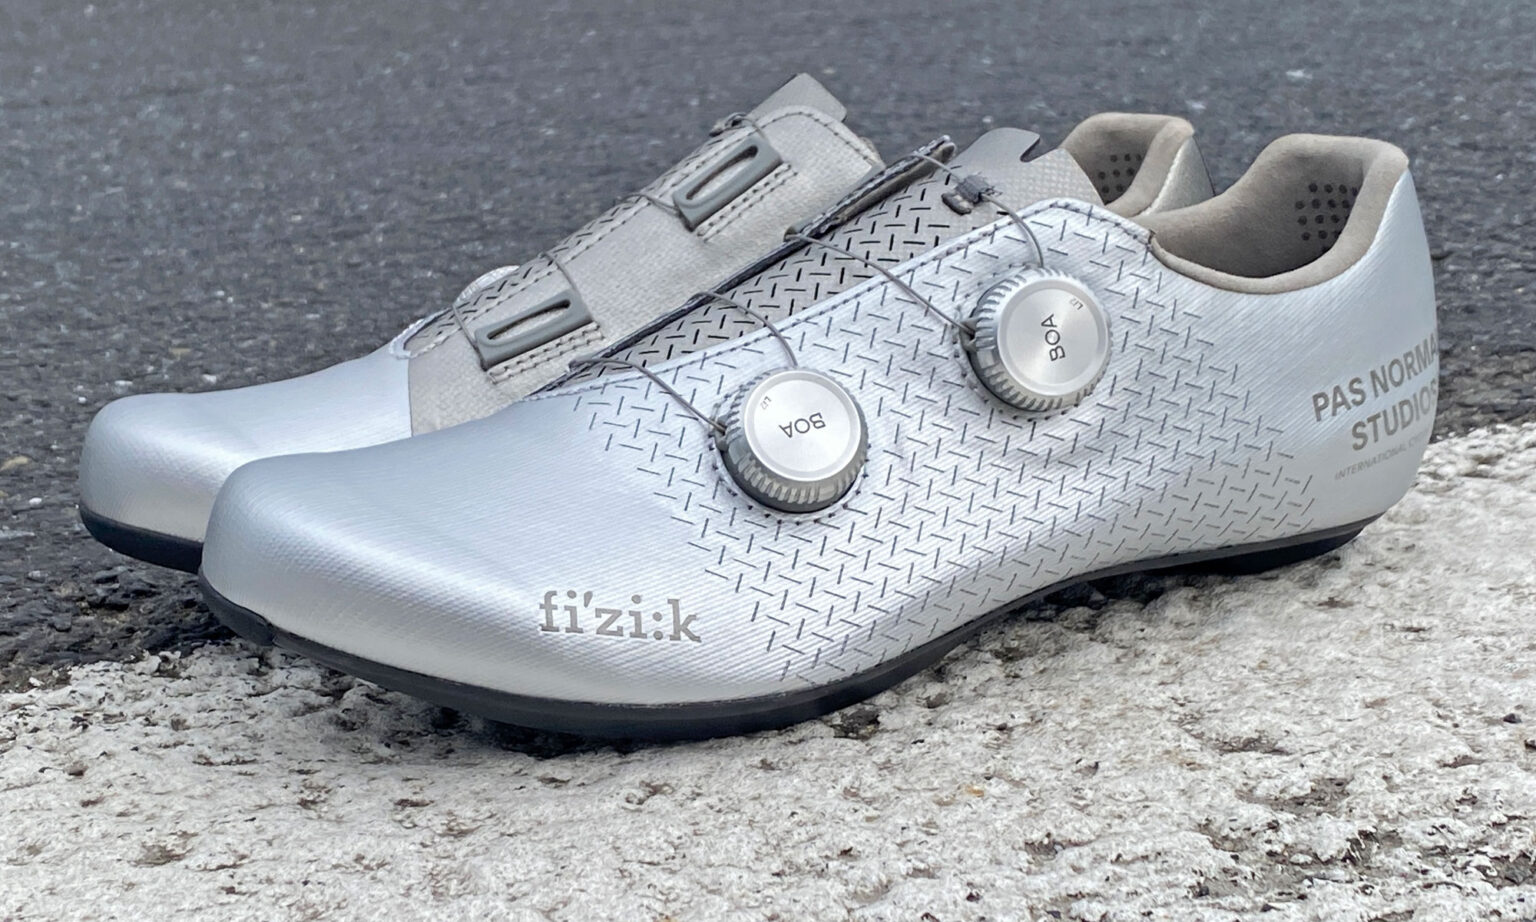 Fizik x Pas Normal Studios Mechanism carbon road shoes, pair